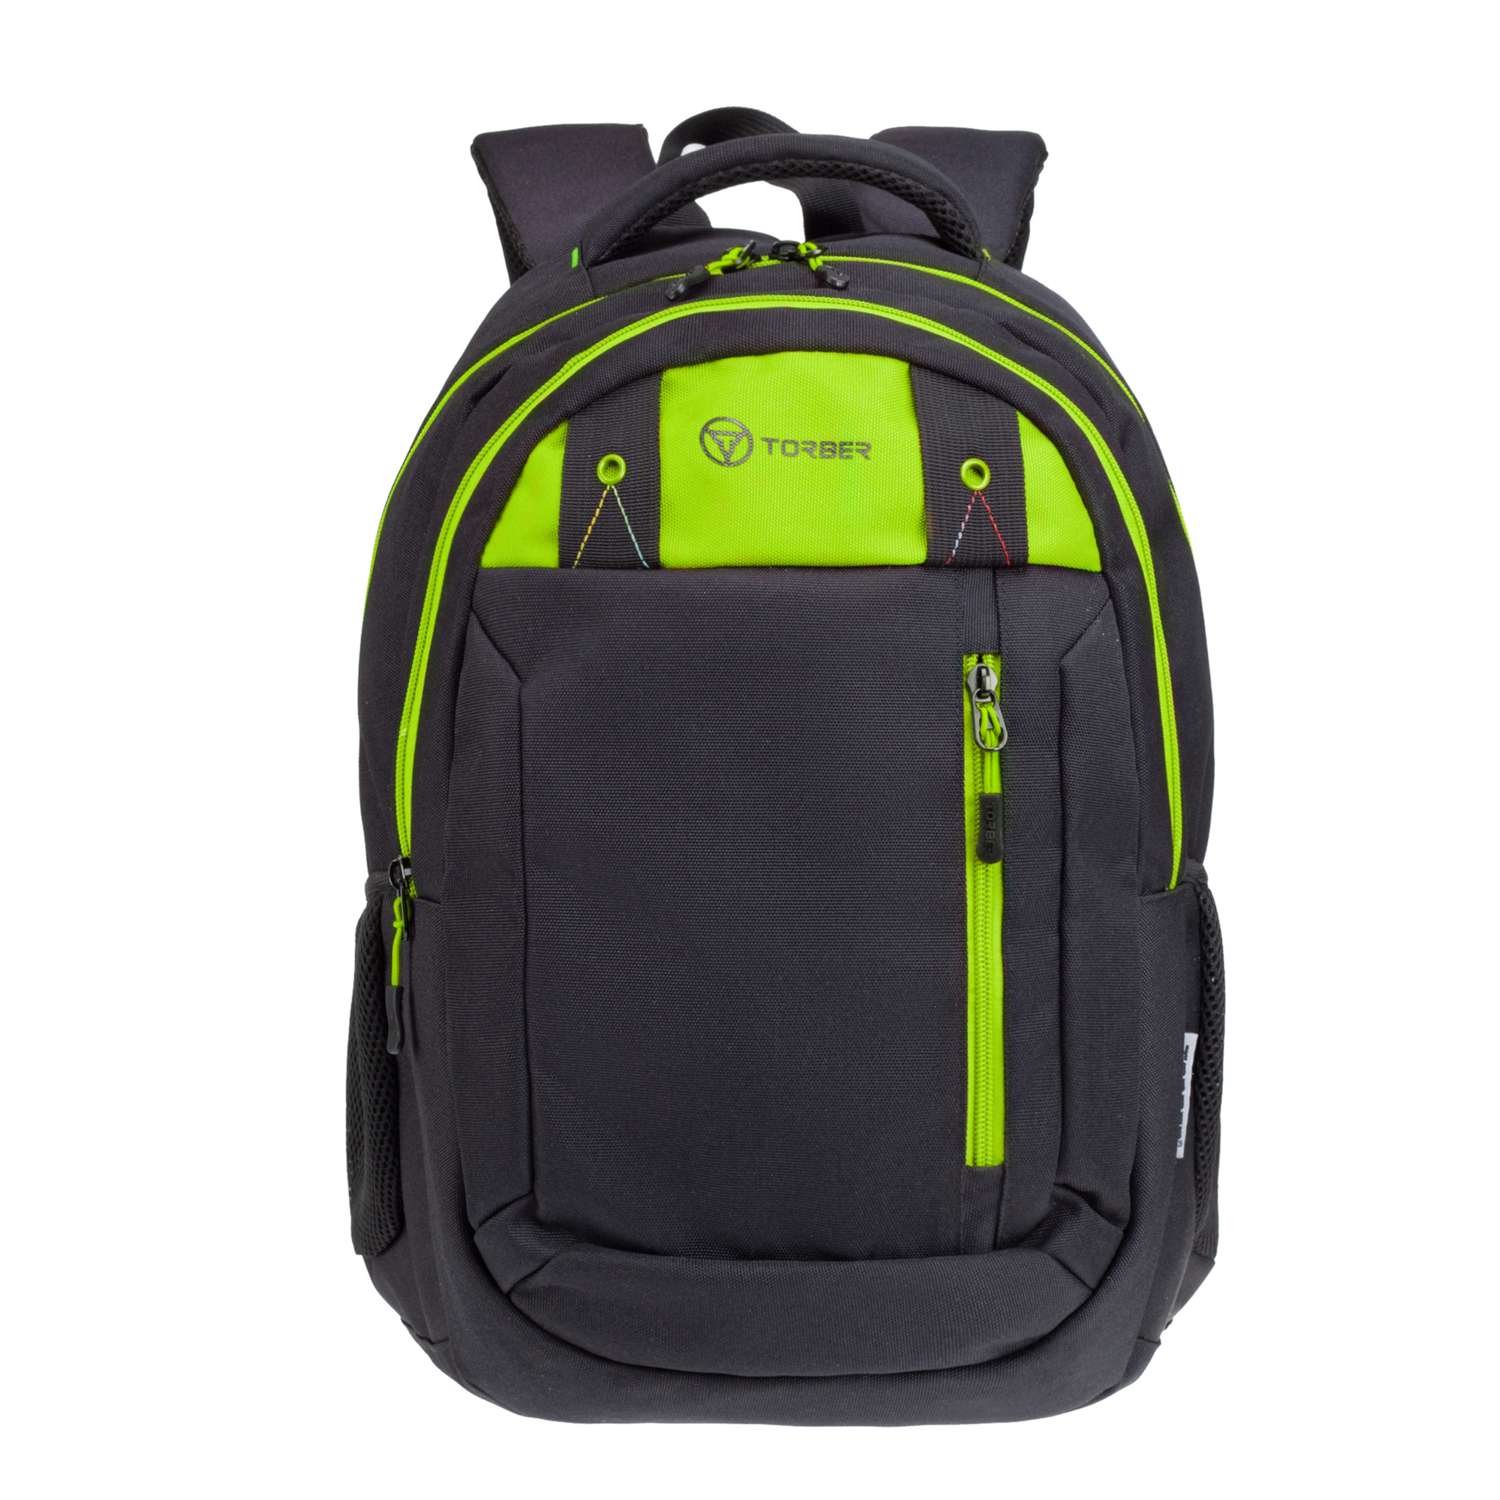 Рюкзак TORBER Class X черный с зеленой вставкой - фото 1